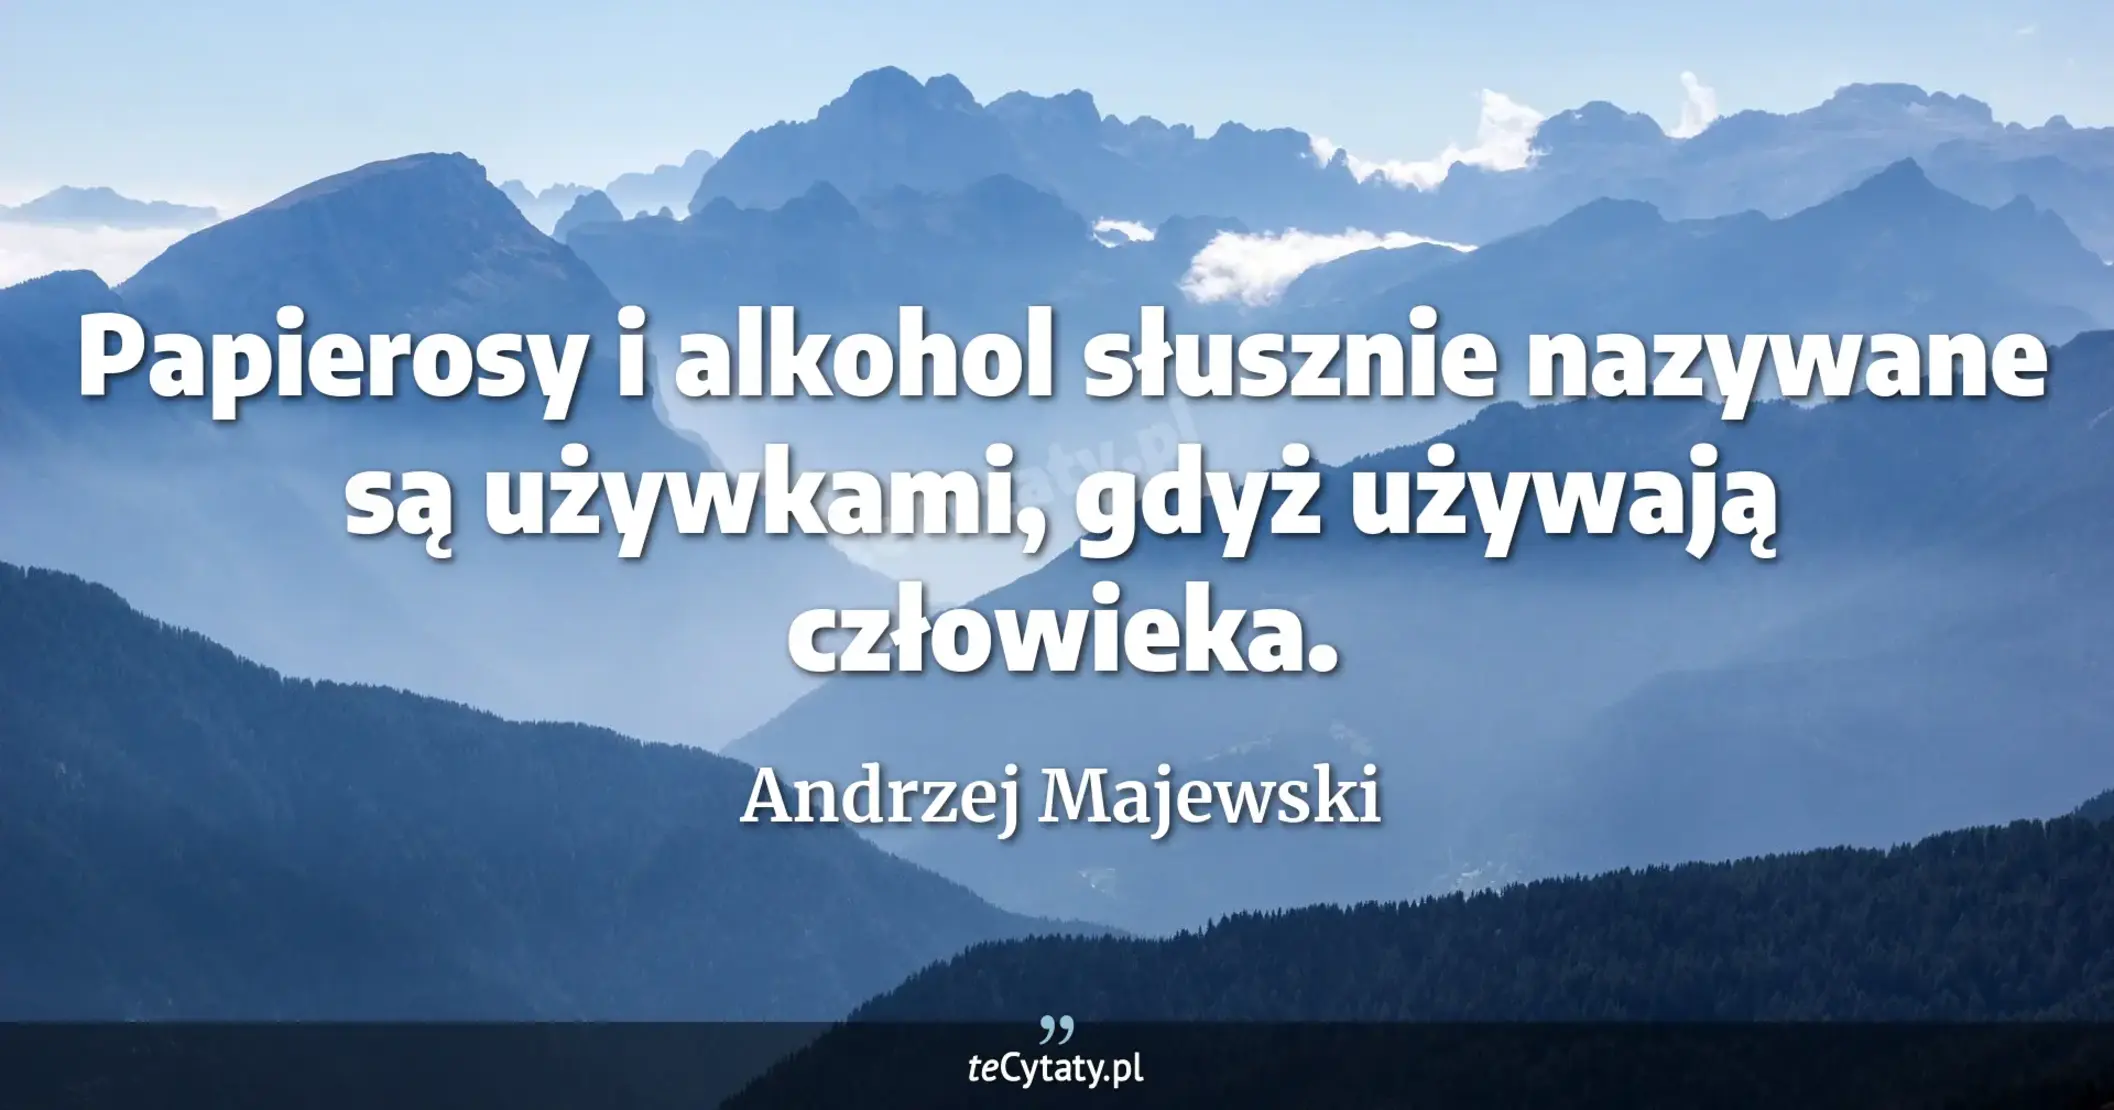 Papierosy i alkohol słusznie nazywane są używkami, gdyż używają człowieka. - Andrzej Majewski